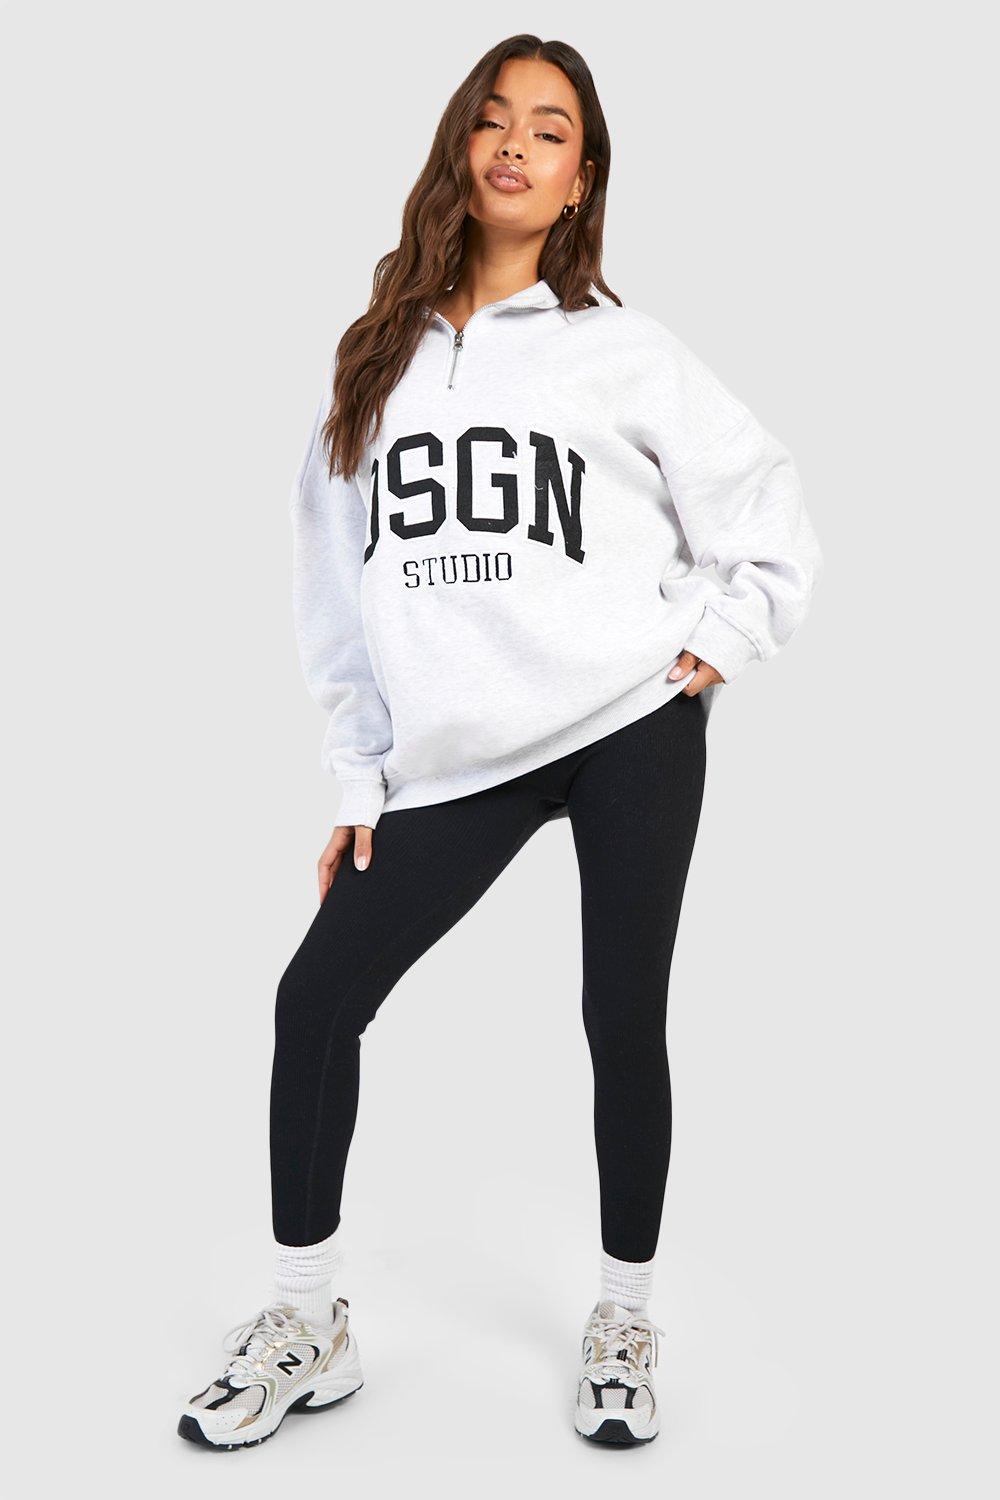 Dsgn Studio Applique Half Zip Sweatshirt | boohoo